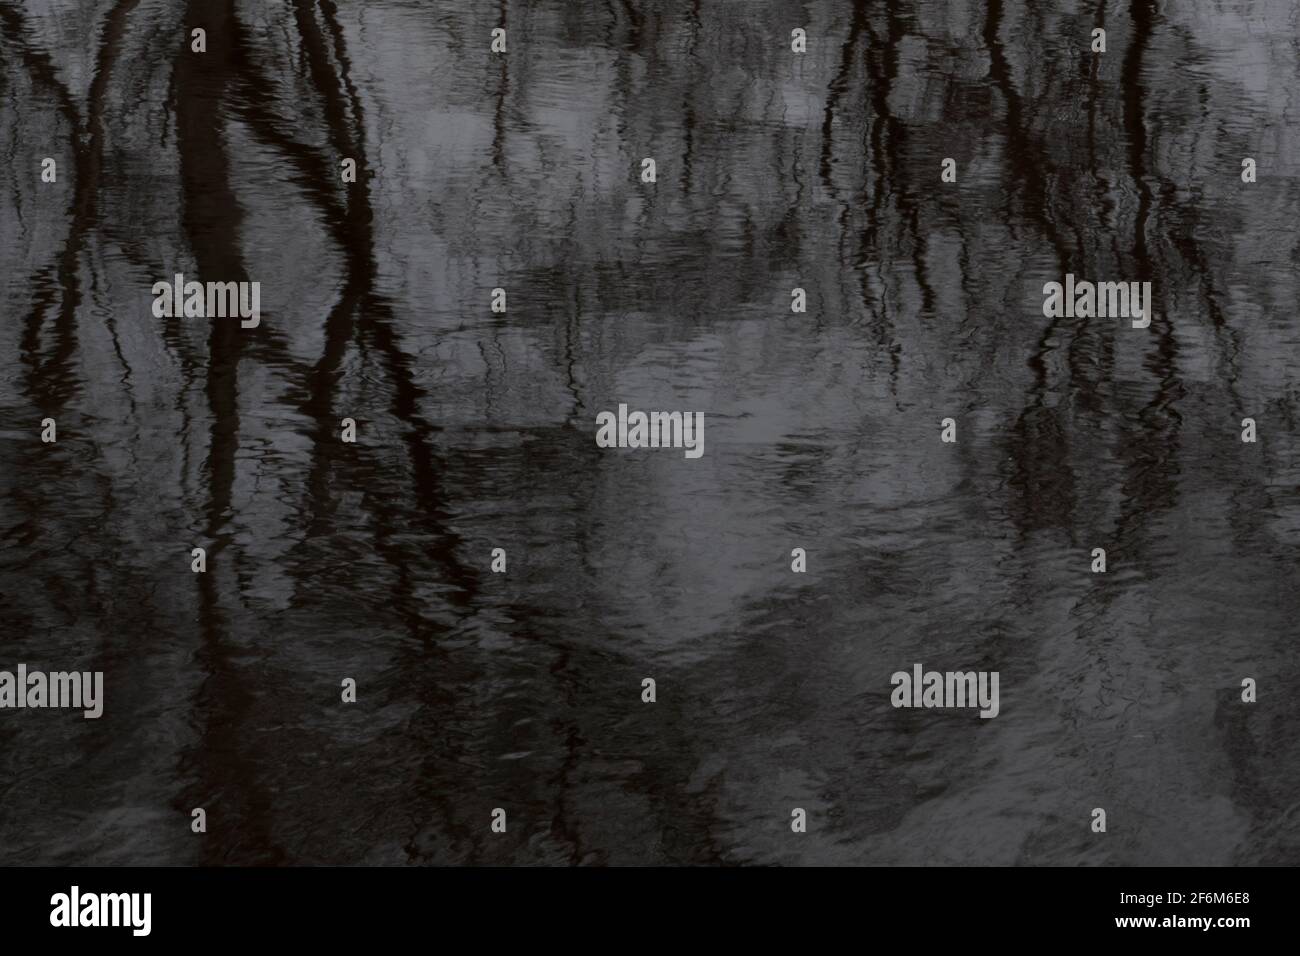 Arrière-plan d'eau noire, arbres réfléchis dans l'eau sombre Banque D'Images